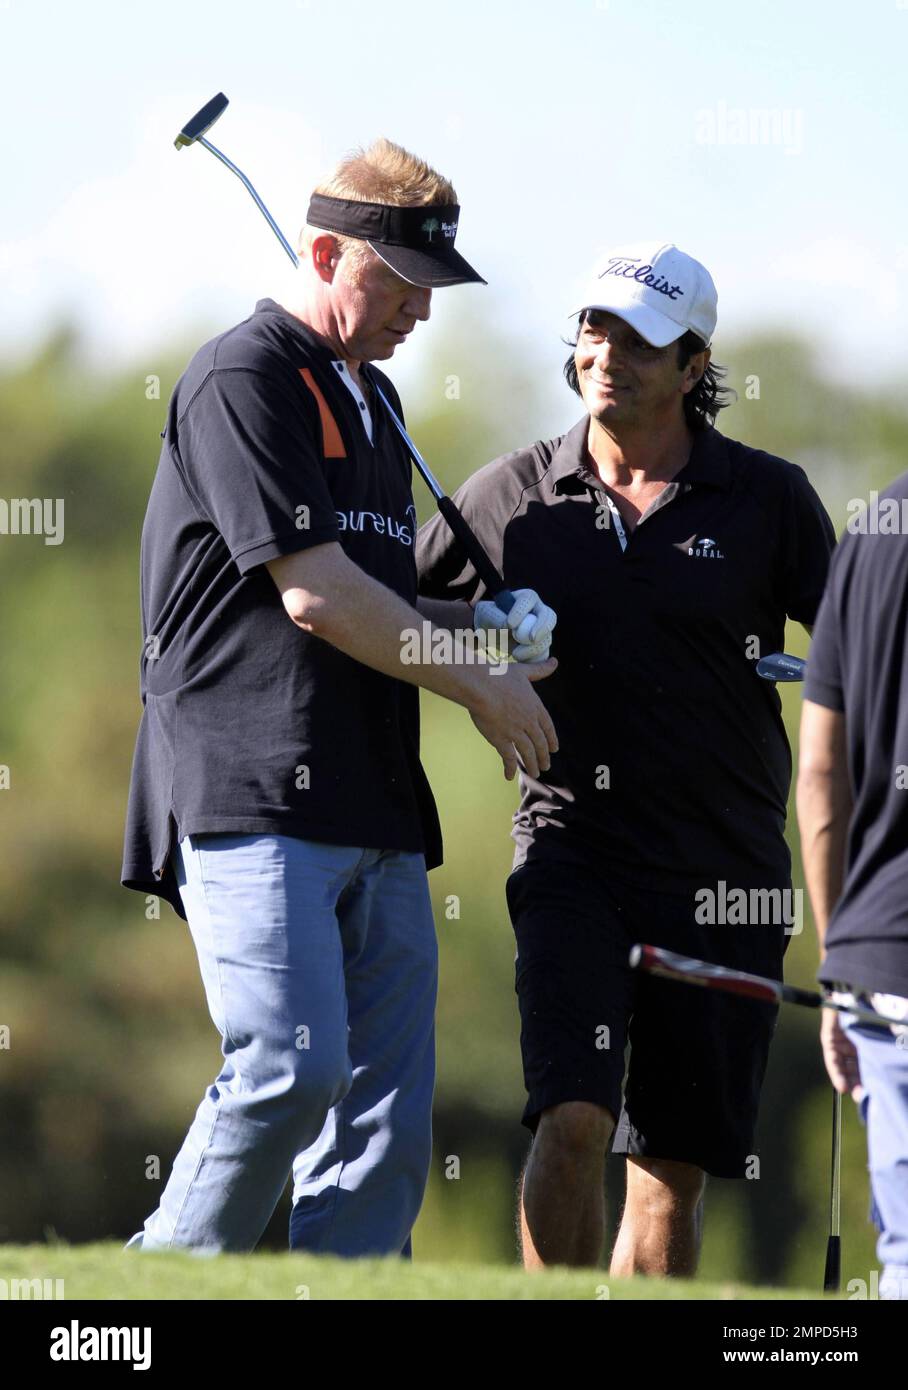 Boris Becker spielt eine Runde Golf mit den Kumpels Rudd und Silver, wobei die Wette gilt, dass der Verlierer das Abendessen zahlt. Boris trug ein Hemd der Nummer 1 und wurde dabei gesehen, wie er seine Nase auf seinem Golfwagen knackte. Miami Beach, Florida 26. Dezember 2011 Stockfoto